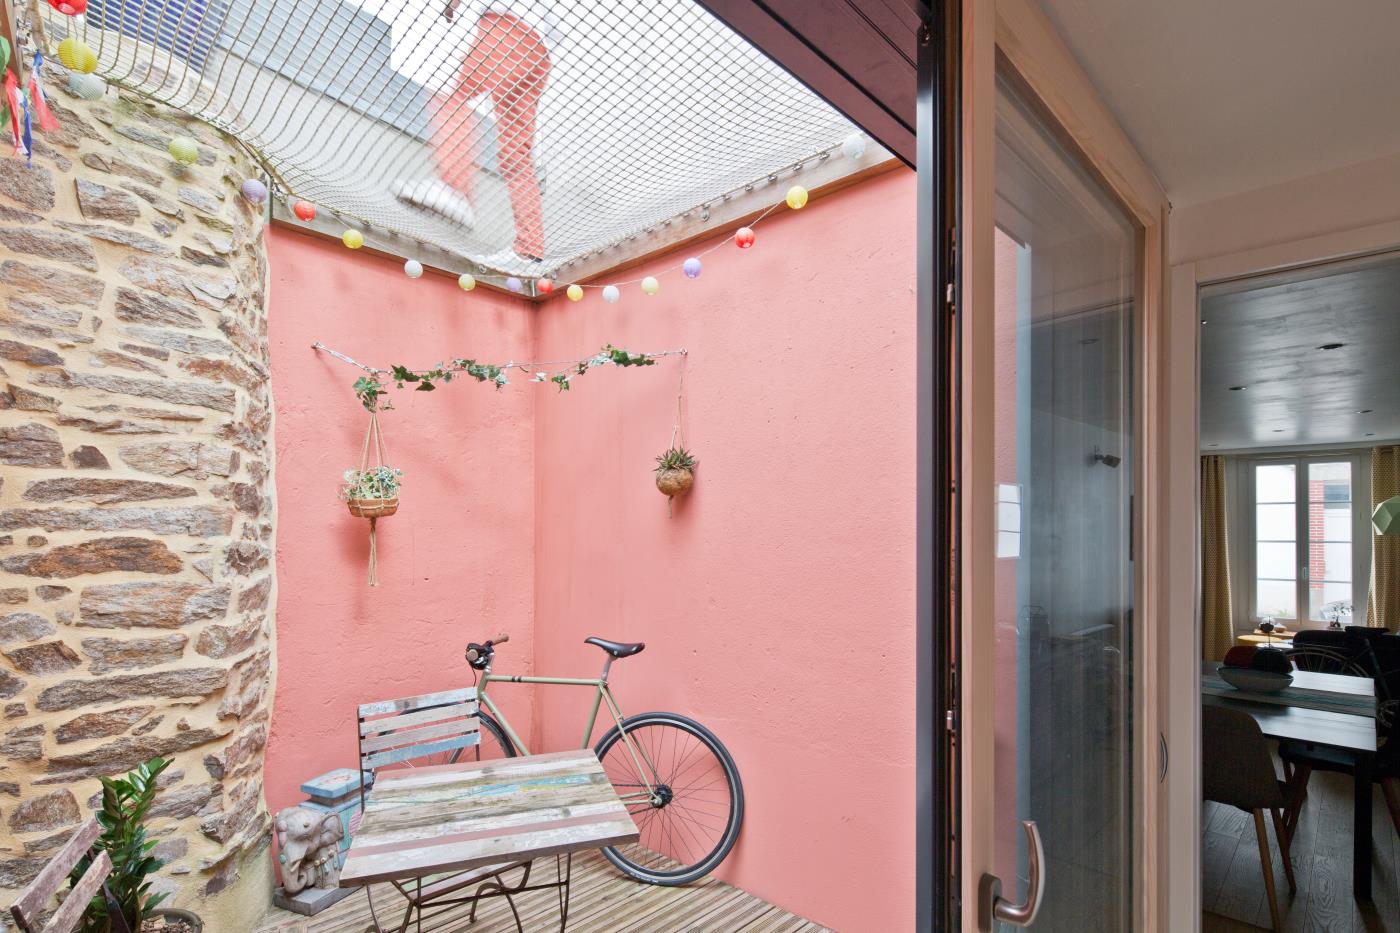 Maison-patio avec filet - Réalisation de l'architecte SAAC sur Rennes et sur le département d'Ille et Vilaine